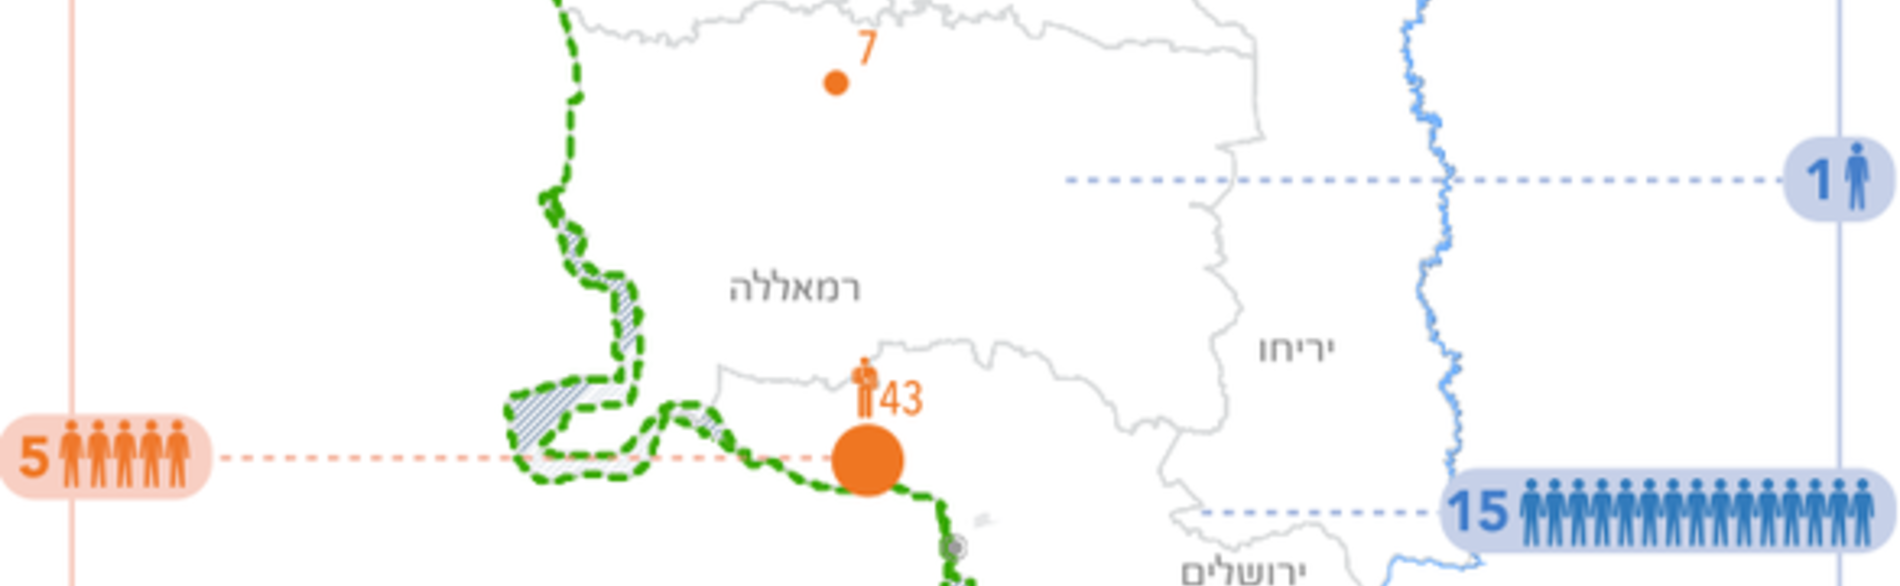 מפה - נפגעים בגדה המערבית ובישראל בחודש אוקטובר 2015